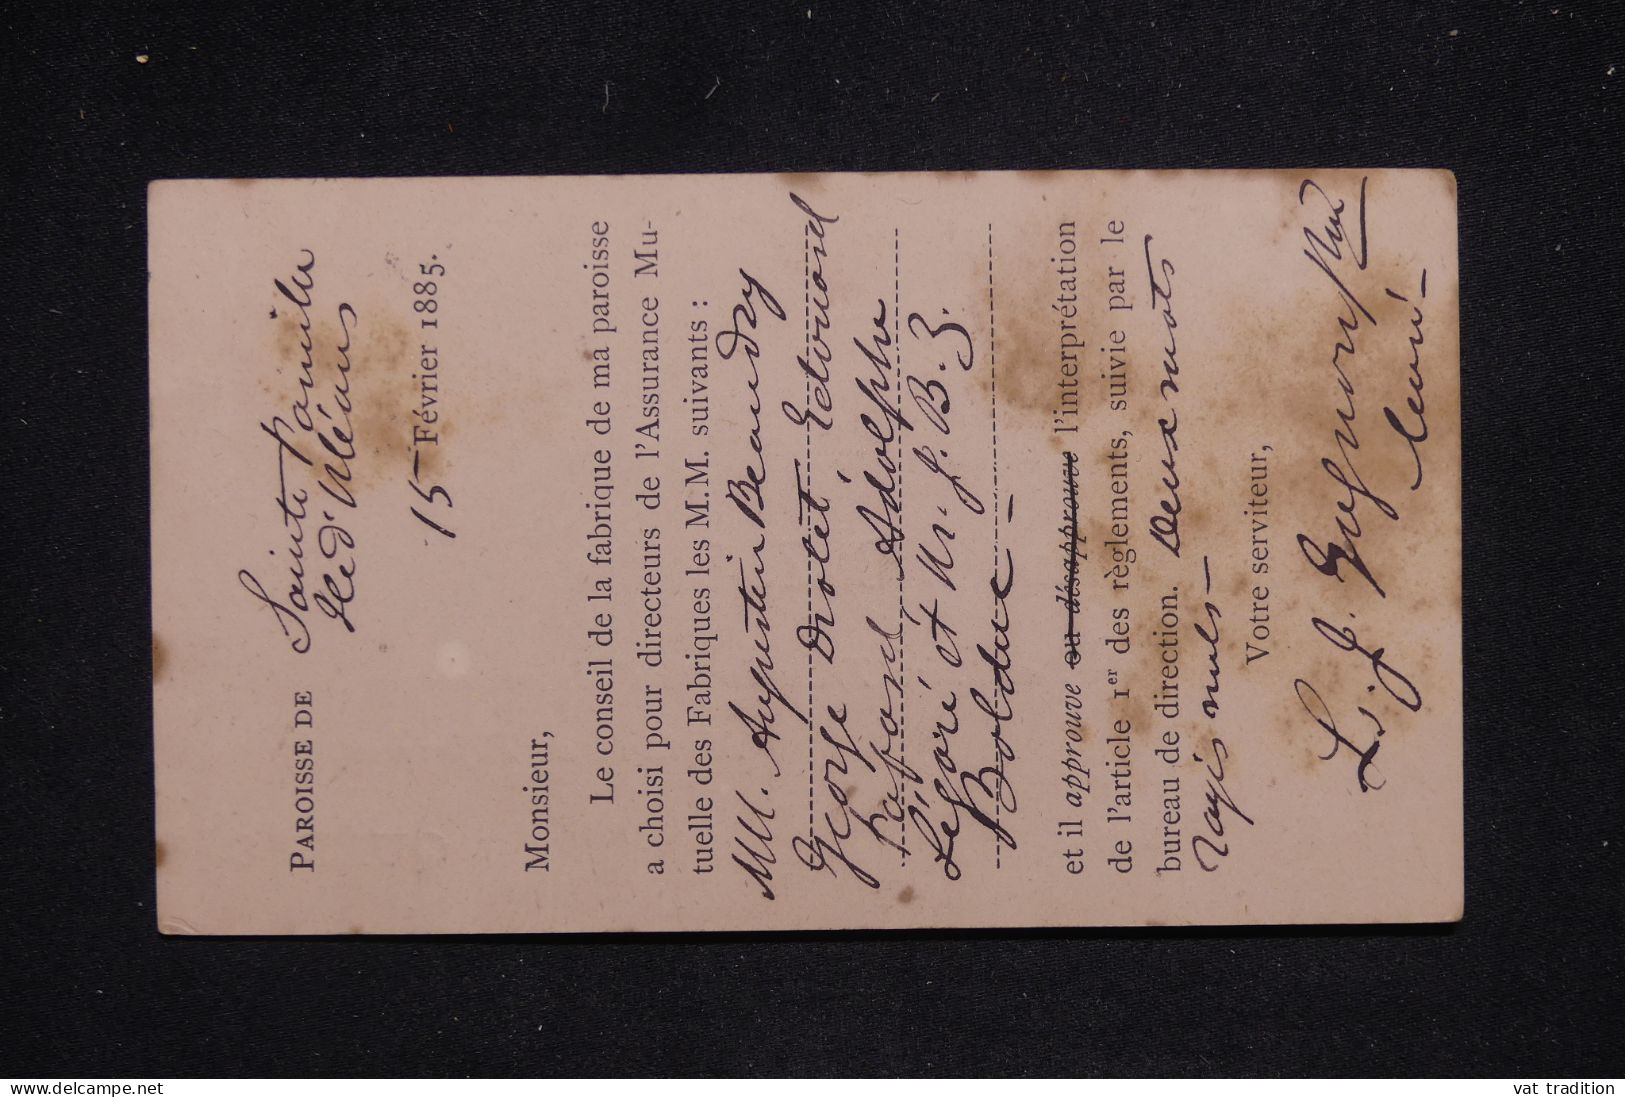 CANADA - Entier Postal Avec Repiquage De La Paroisse De Ste Famille Pour Québec En 1885 - L 142931 - 1860-1899 Victoria